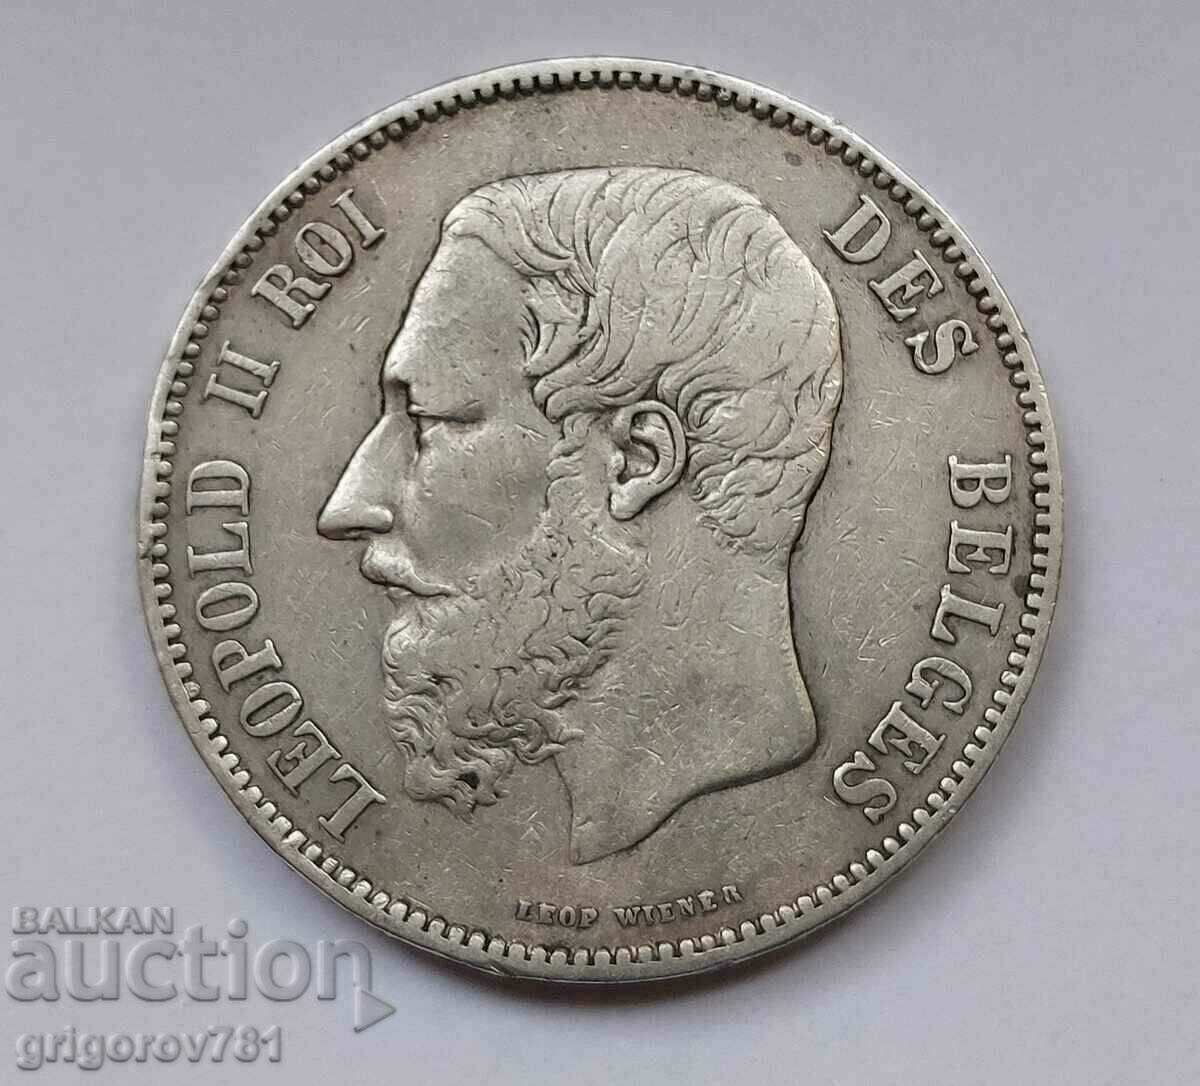 5 Francs Silver Belgium 1867 - Silver Coin #95